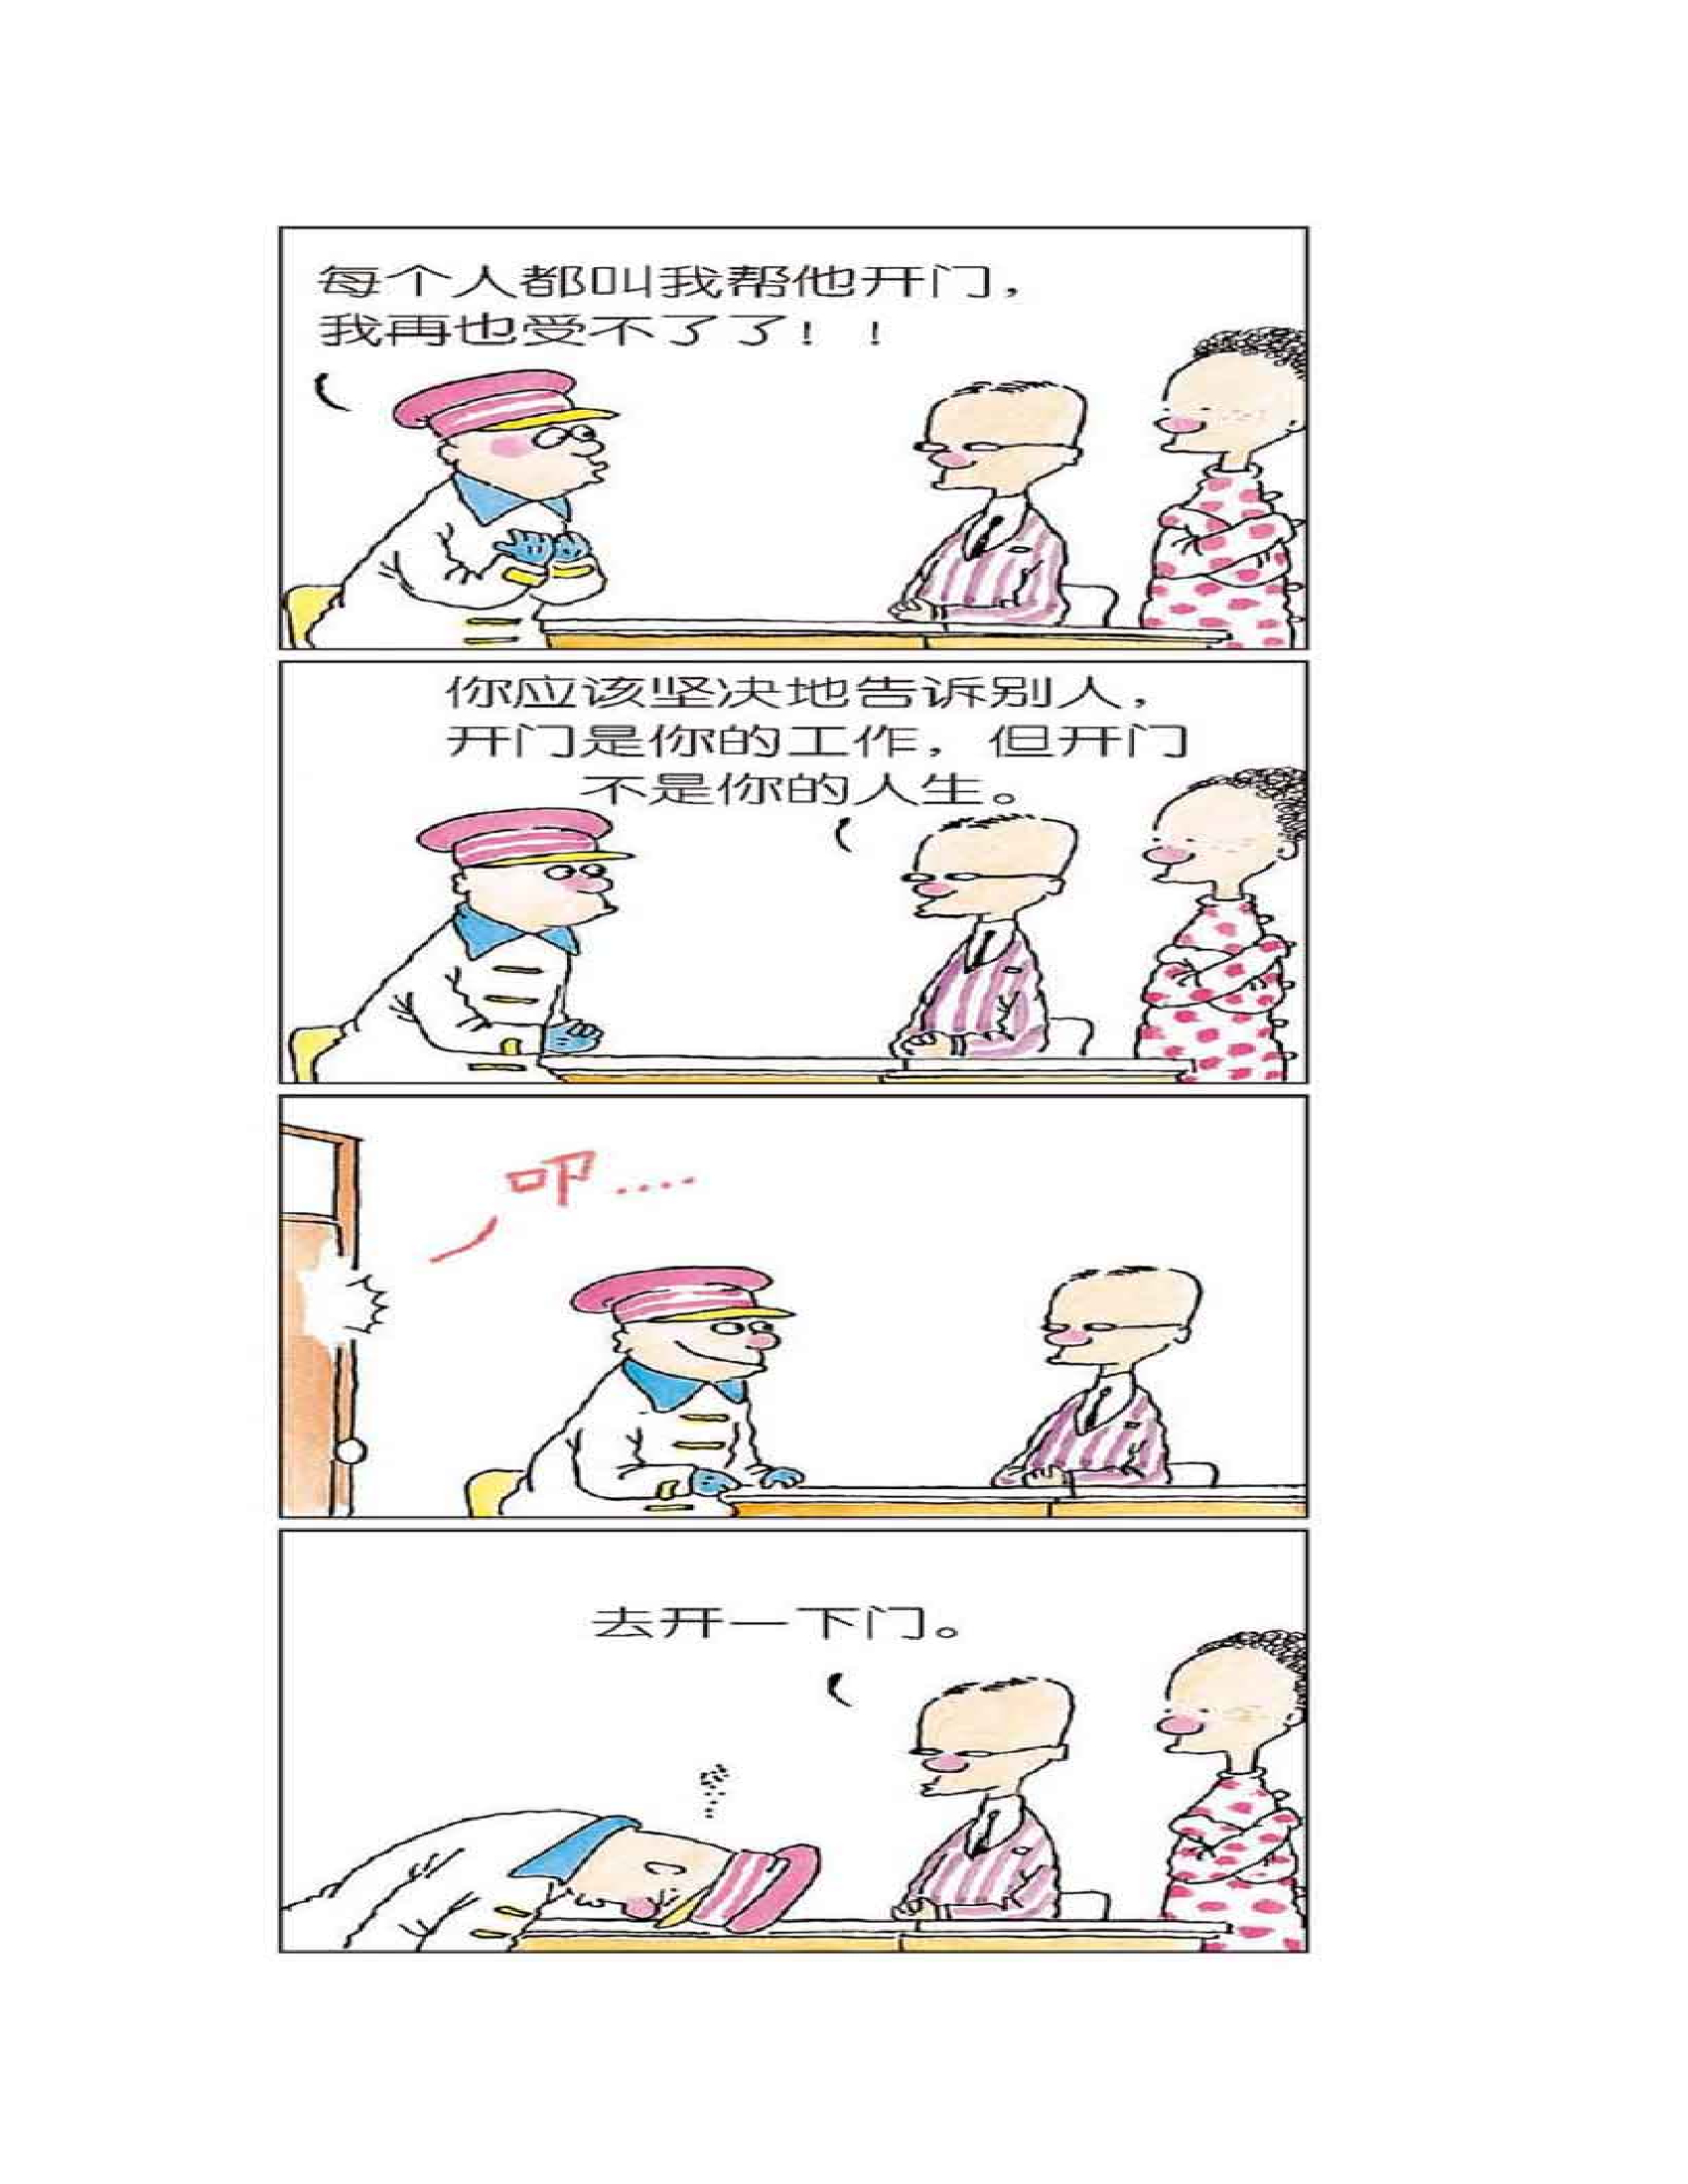 【漫画集】中国漫画家俺正讀《洛克人》 - 哔哩哔哩